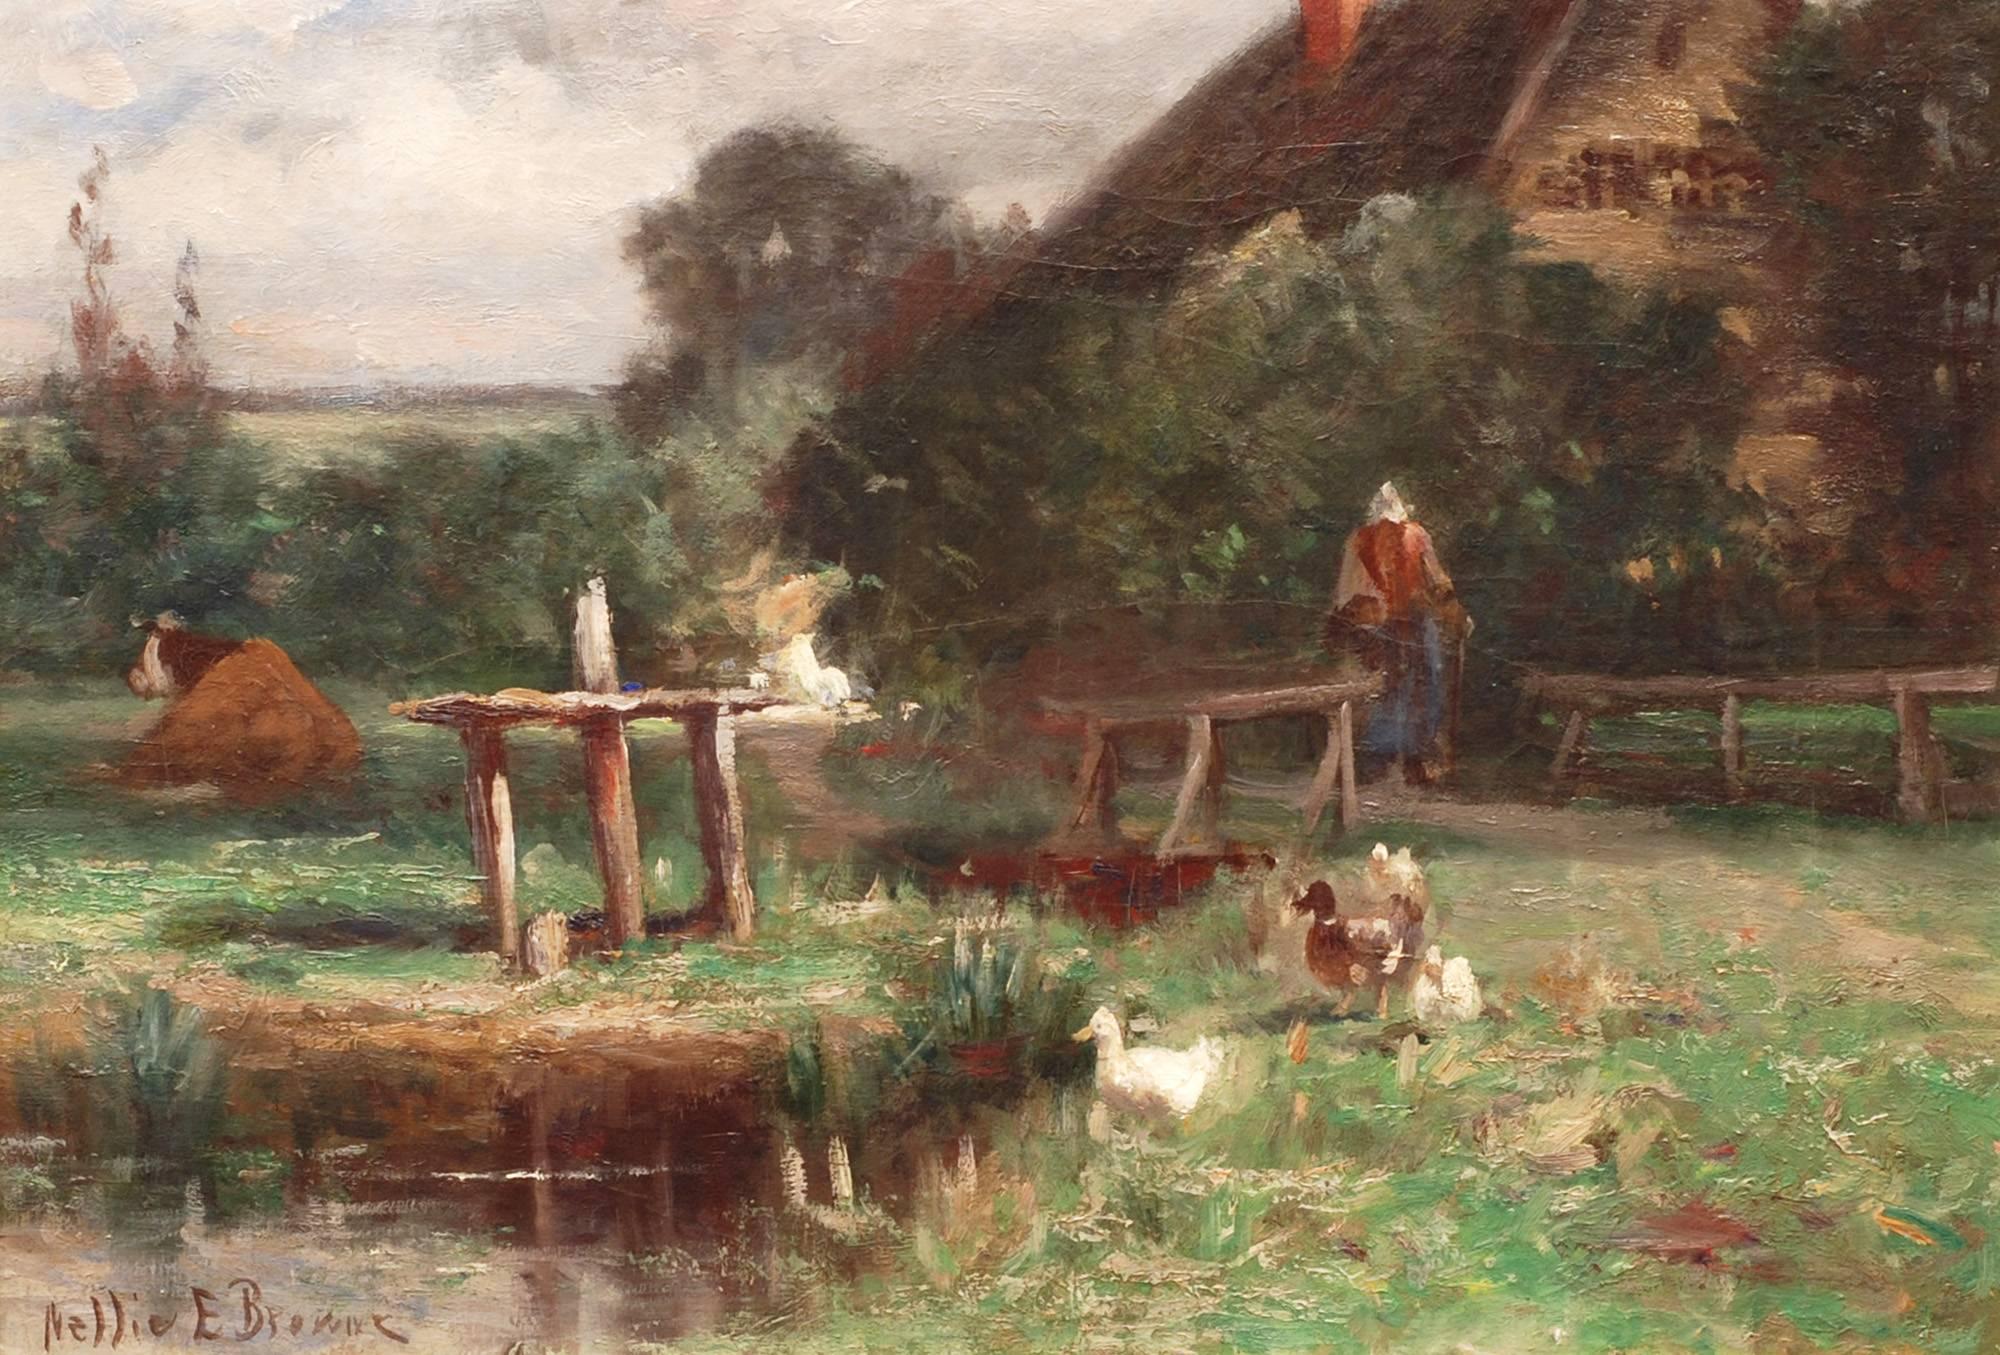 Landscape Painting Nellie E. Brown (fl. 1890-1910) - Dans la cour de la ferme